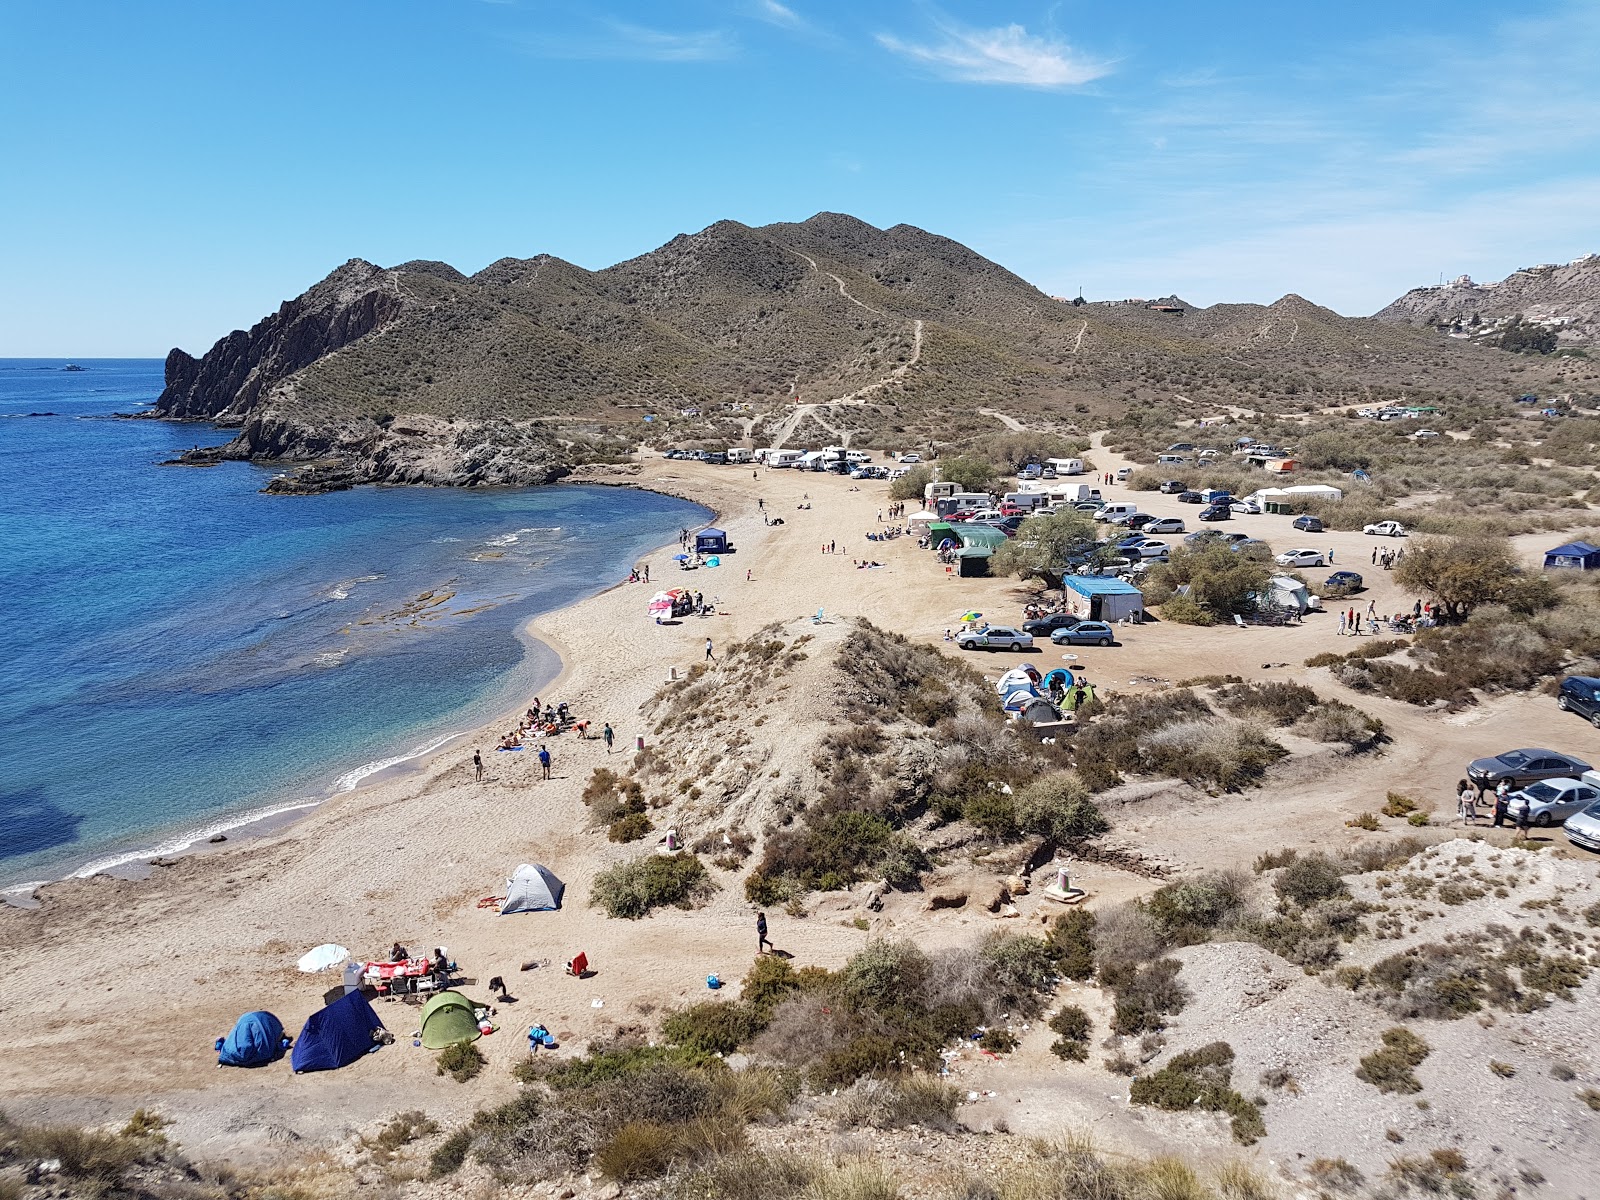 Playa del Arroz'in fotoğrafı gri kum yüzey ile